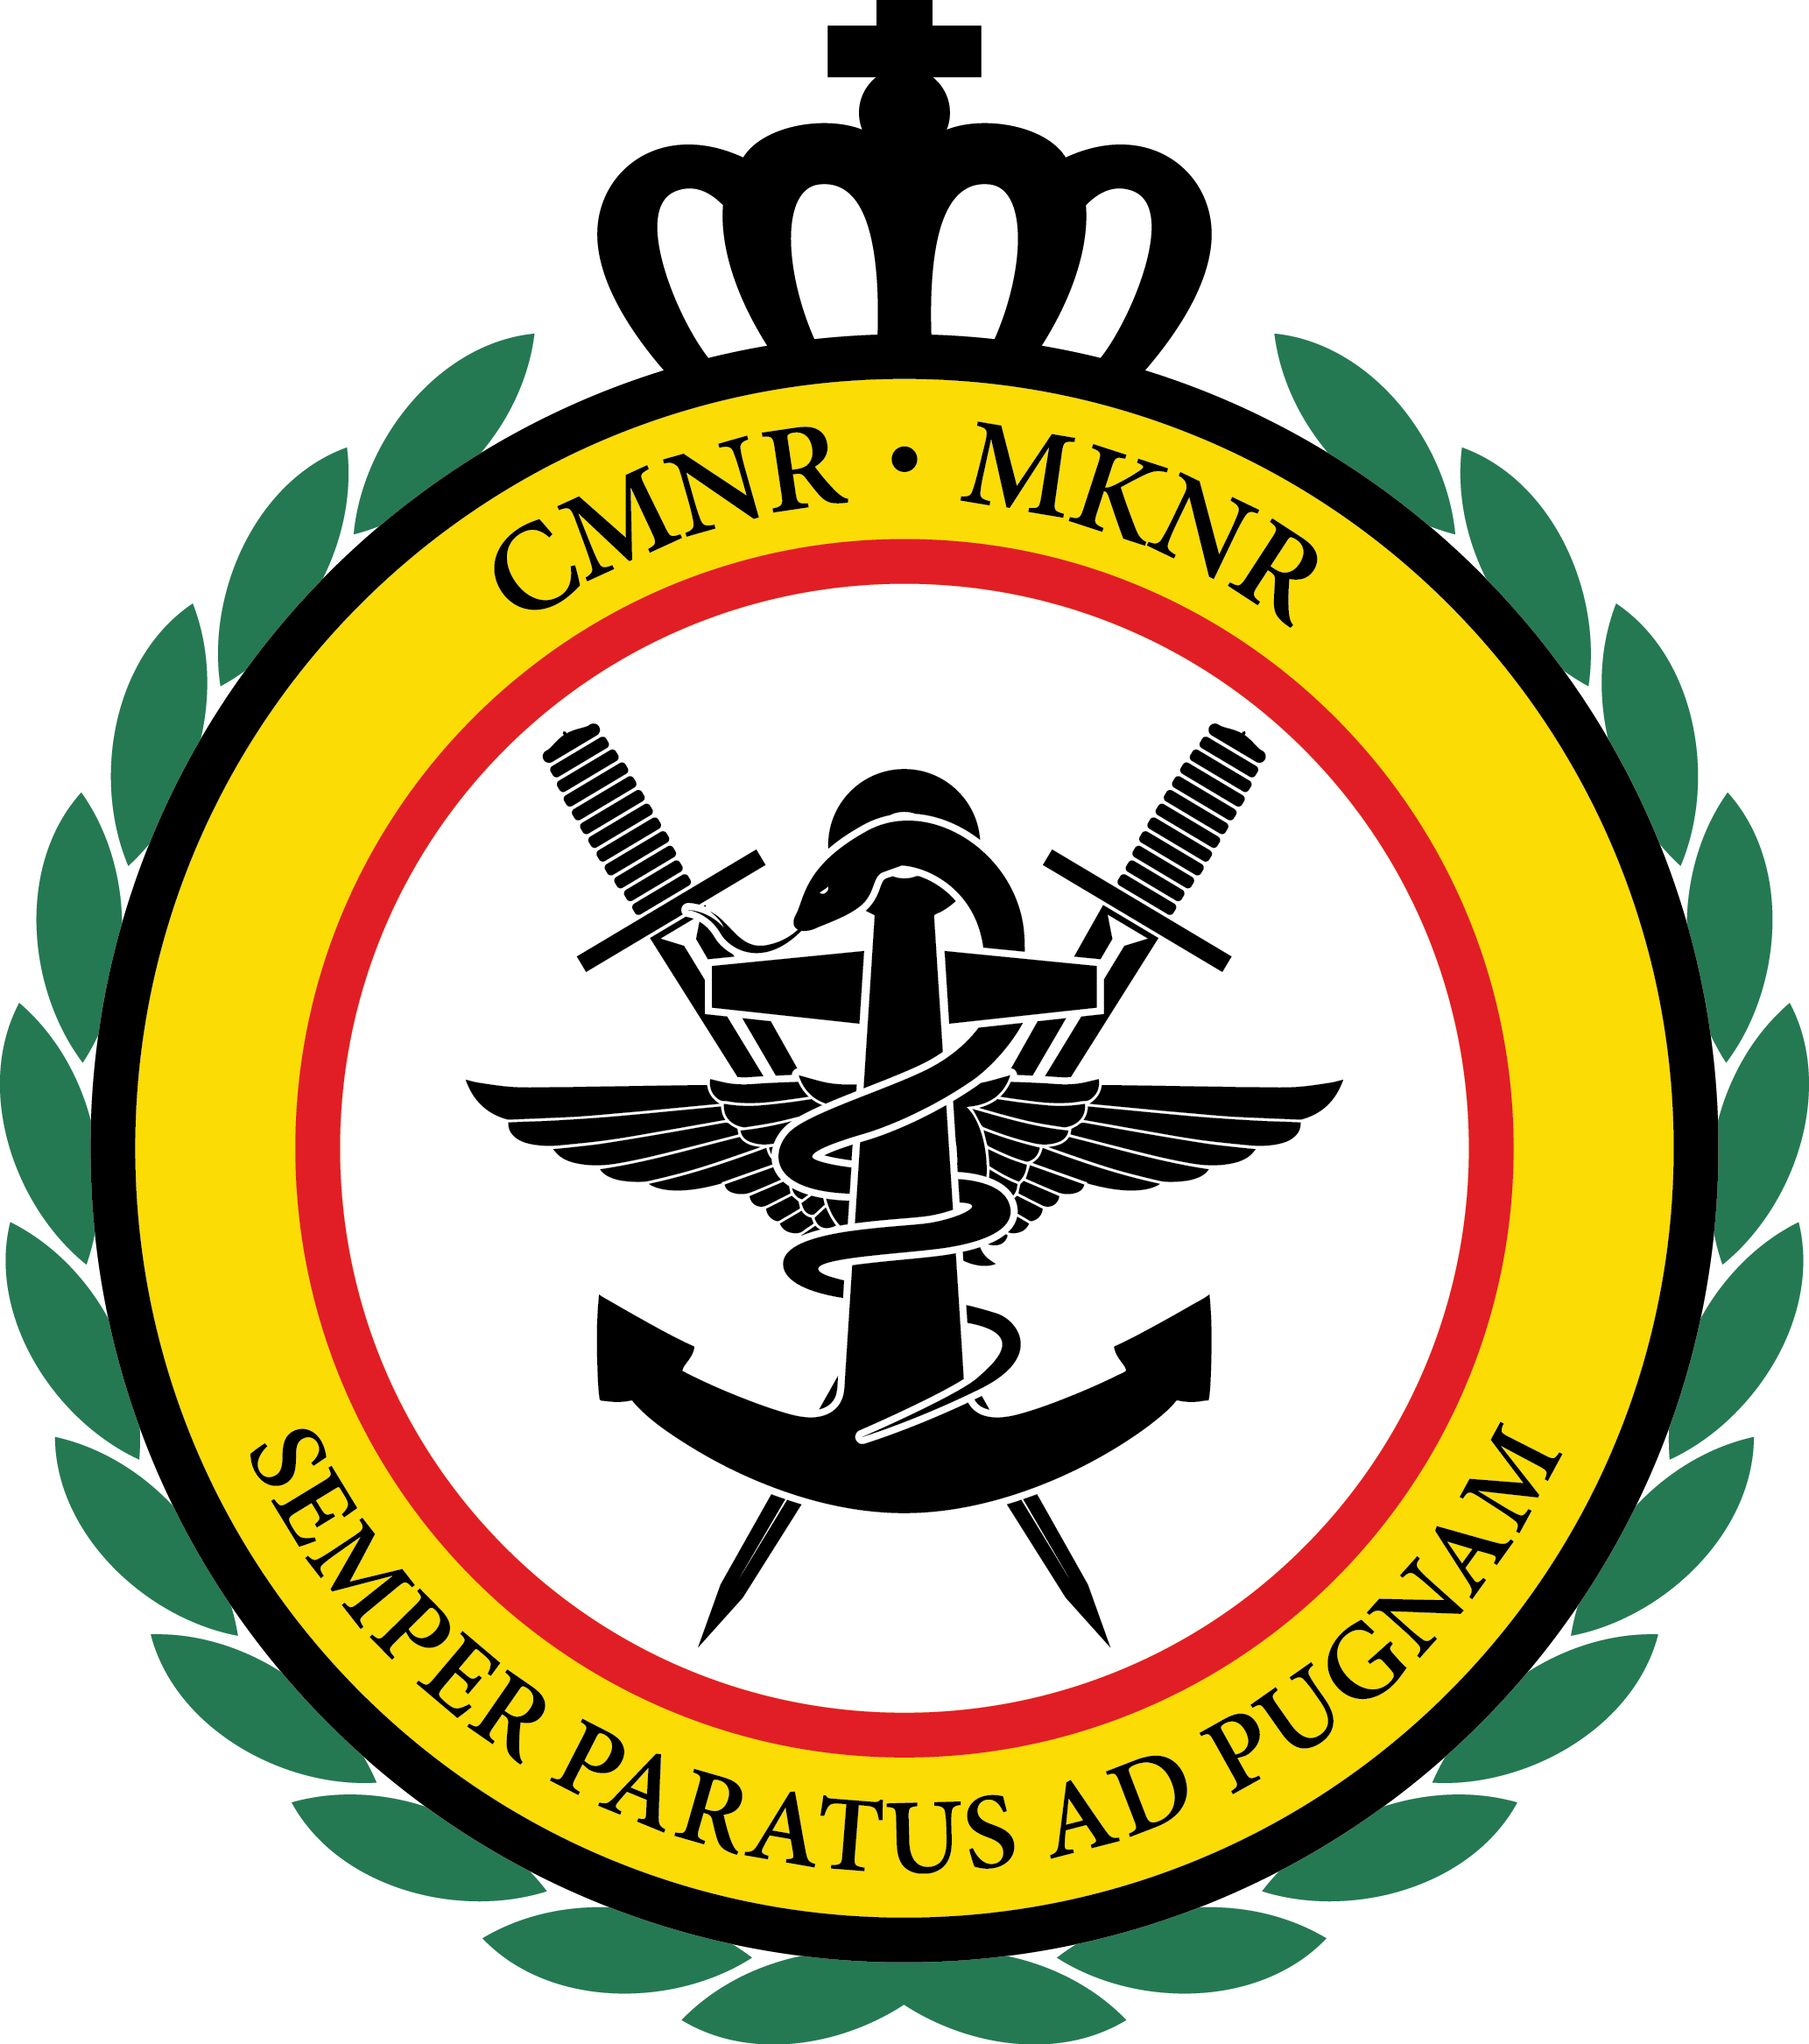 CMNR - MKNR logo